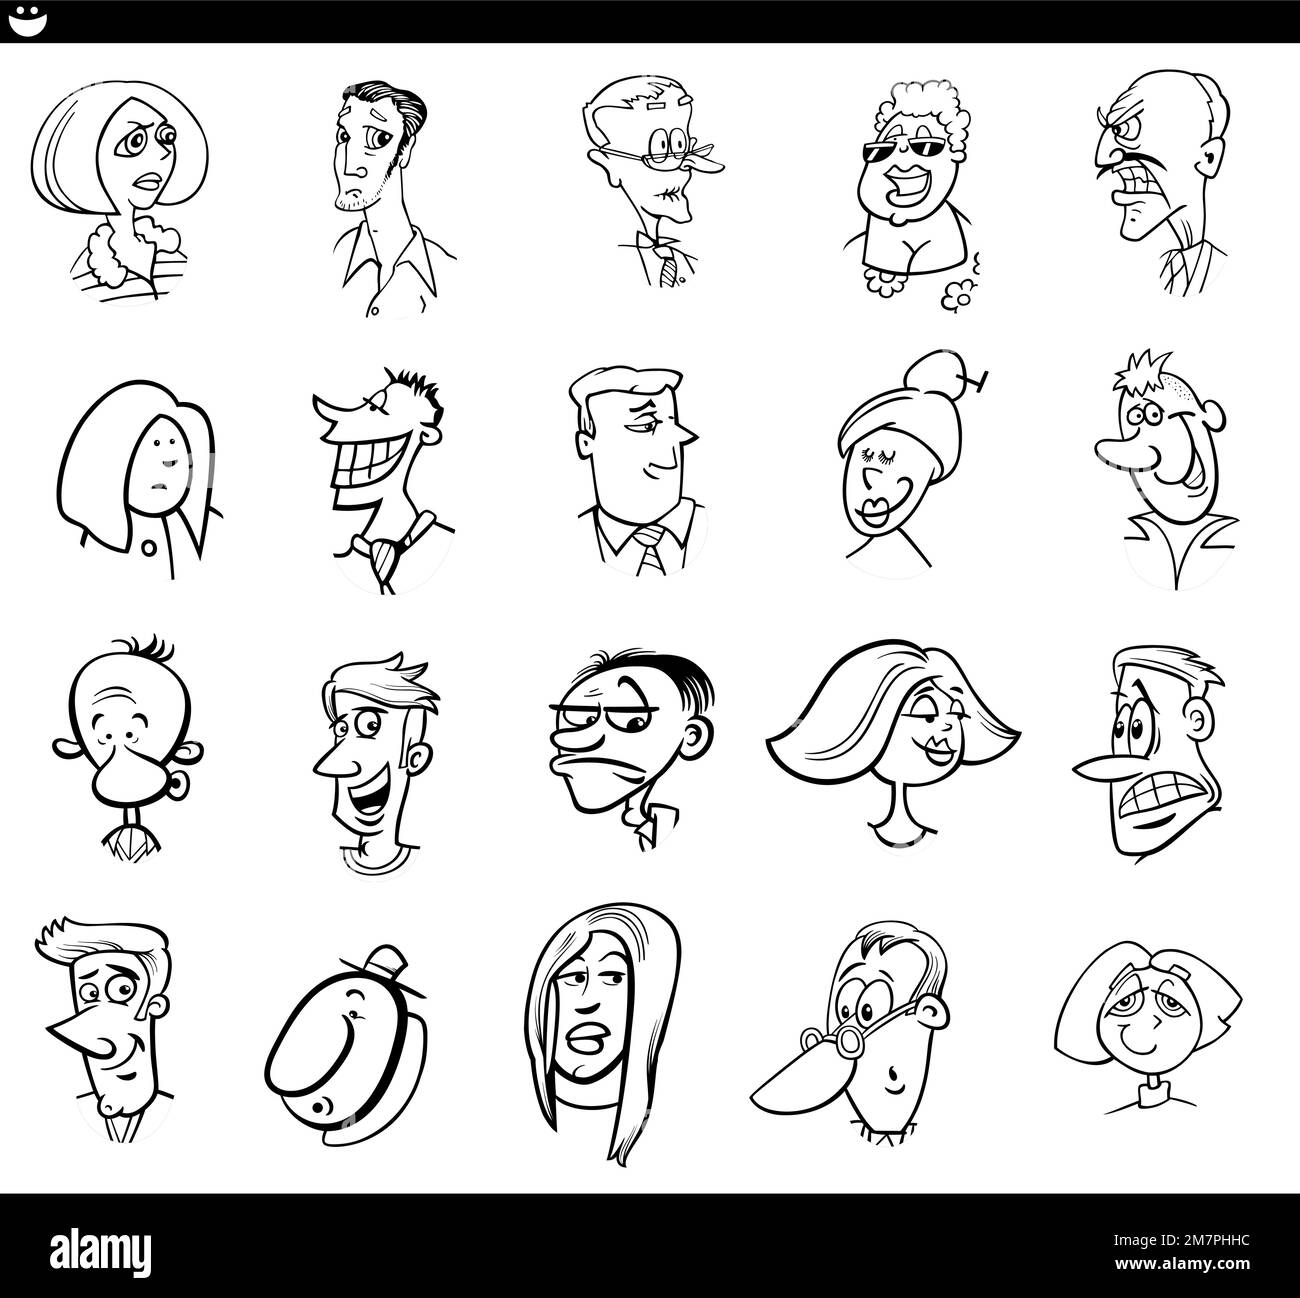 Schwarz-weiß-Cartoon mit lustigen Menschen Gesichtern Stock Vektor